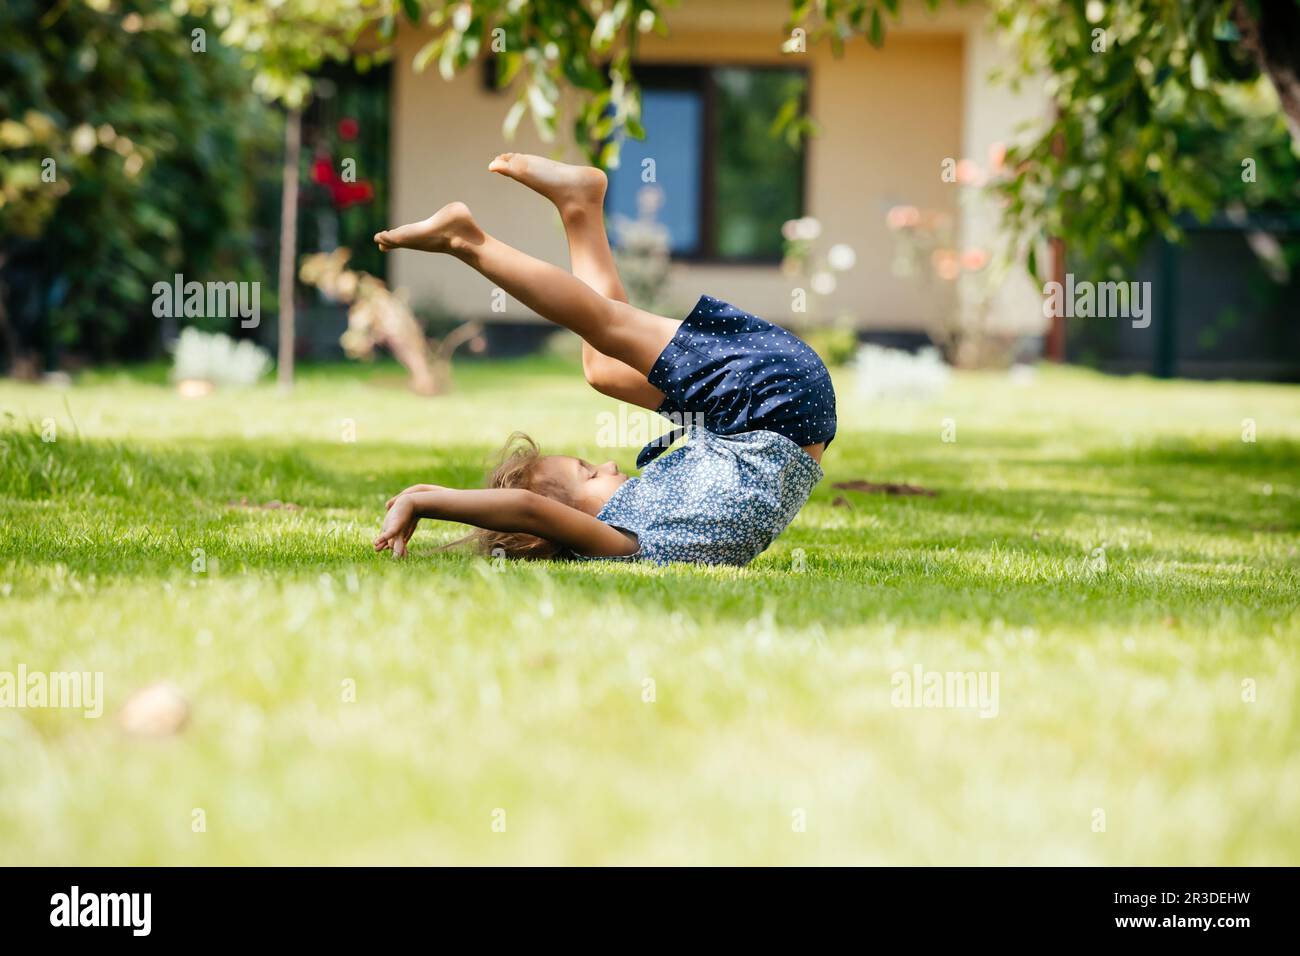 La bambina attiva fa un somersault sul cortile Foto Stock